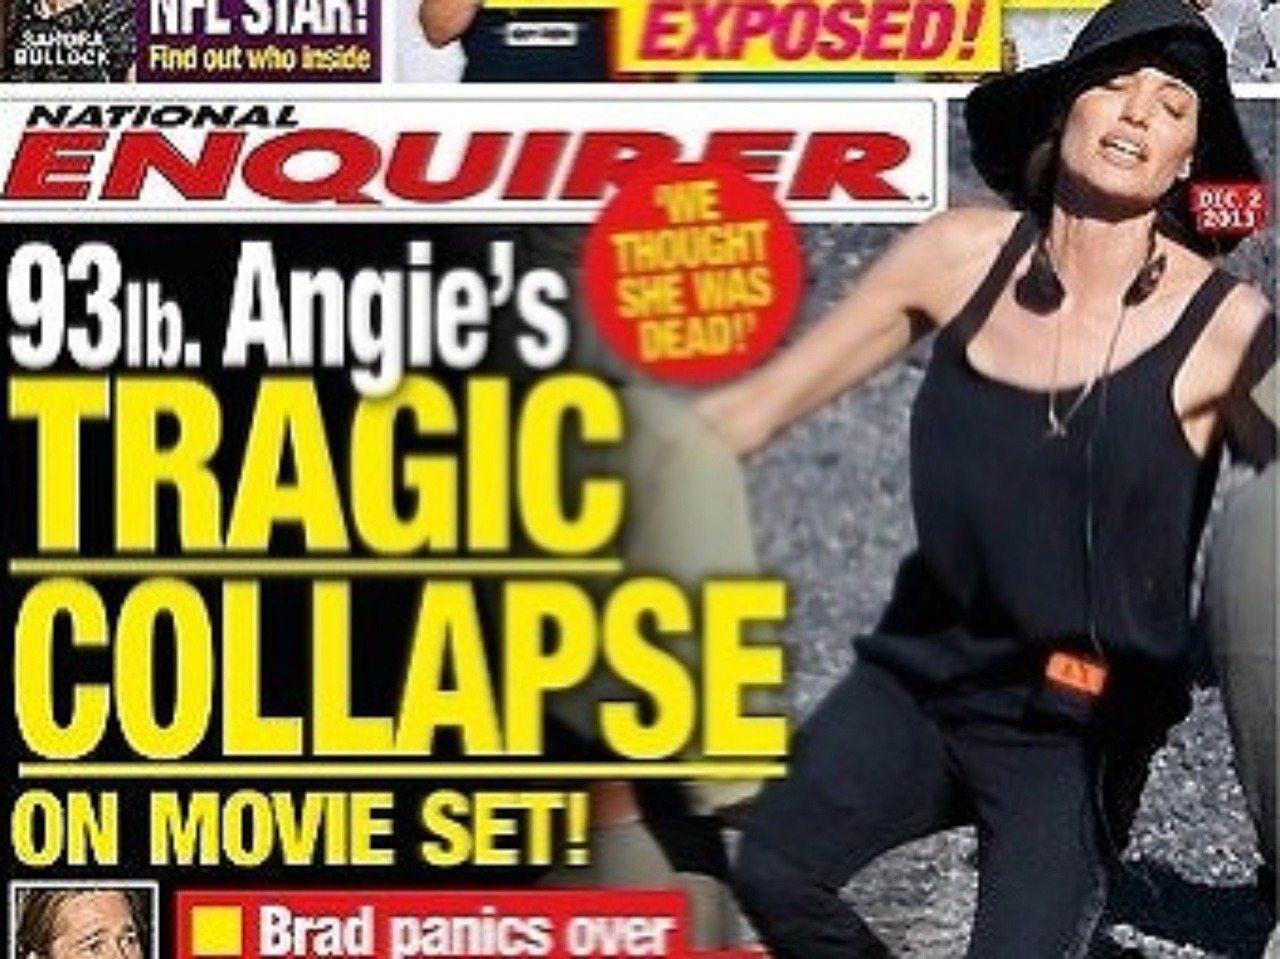 Angelina Jolie podľa titulnej strany magazínu National Enquirer odpadla a bojovala o život.